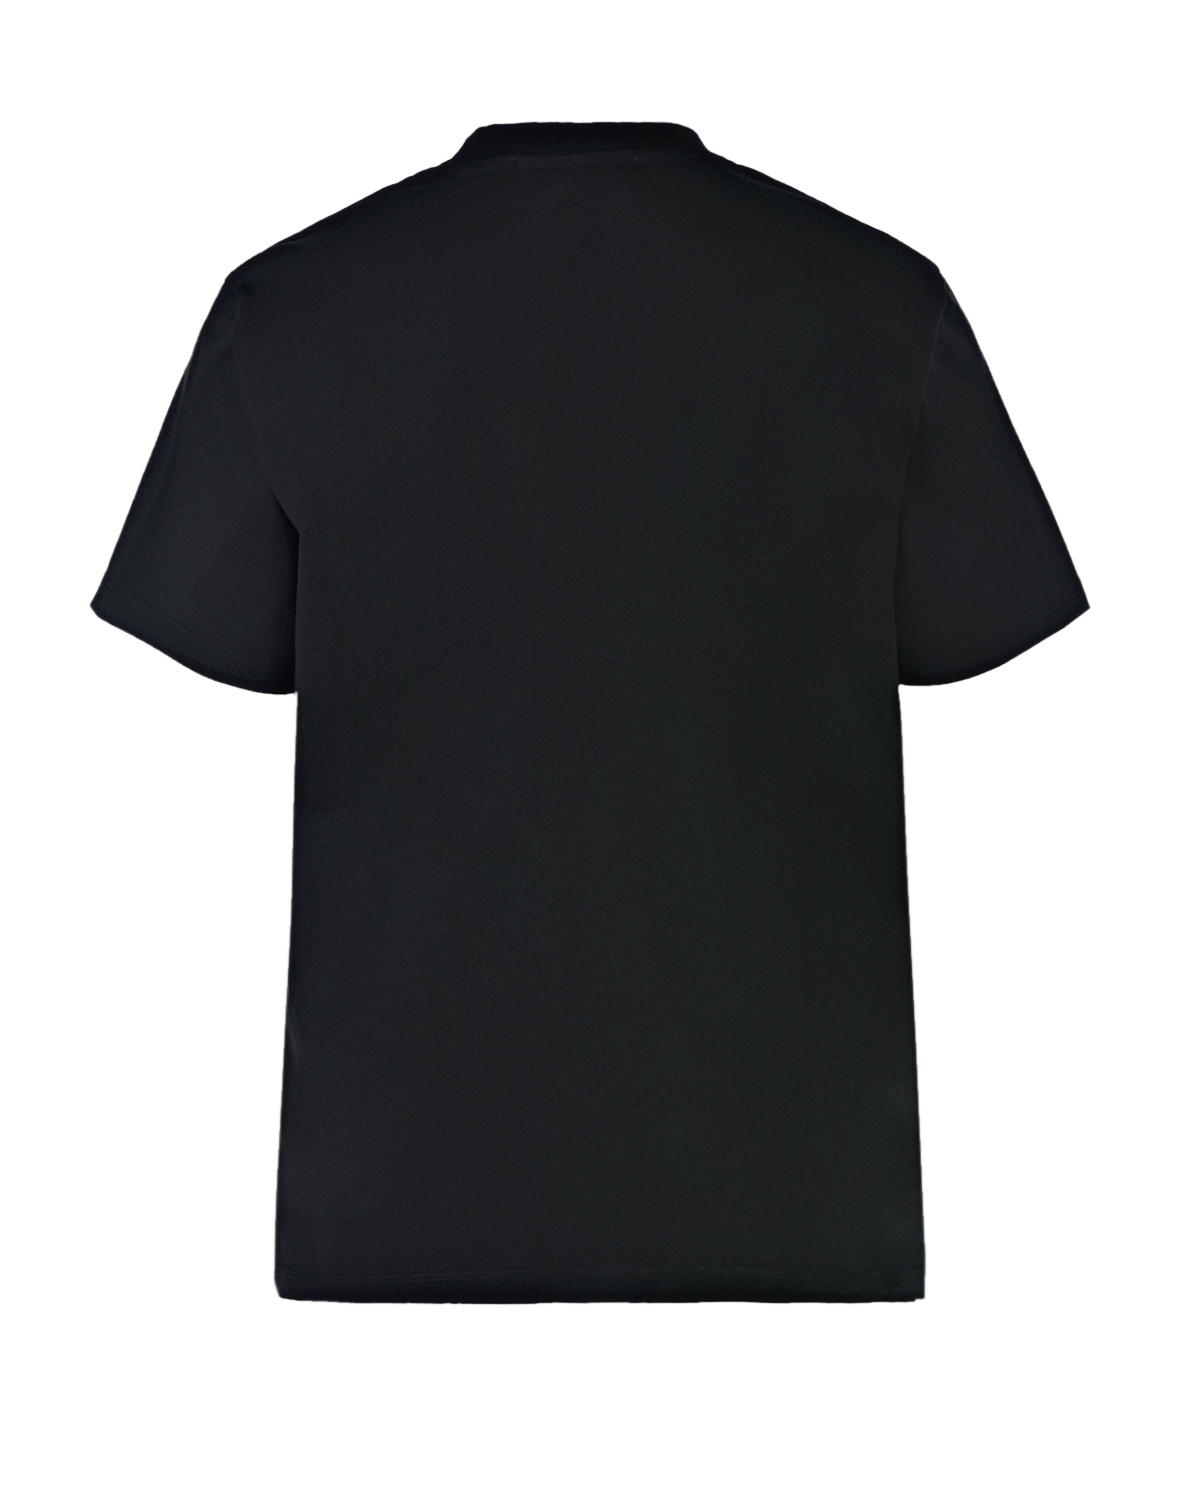 Черная футболка с прямоугольным принтом MSGM, размер 40, цвет черный - фото 7